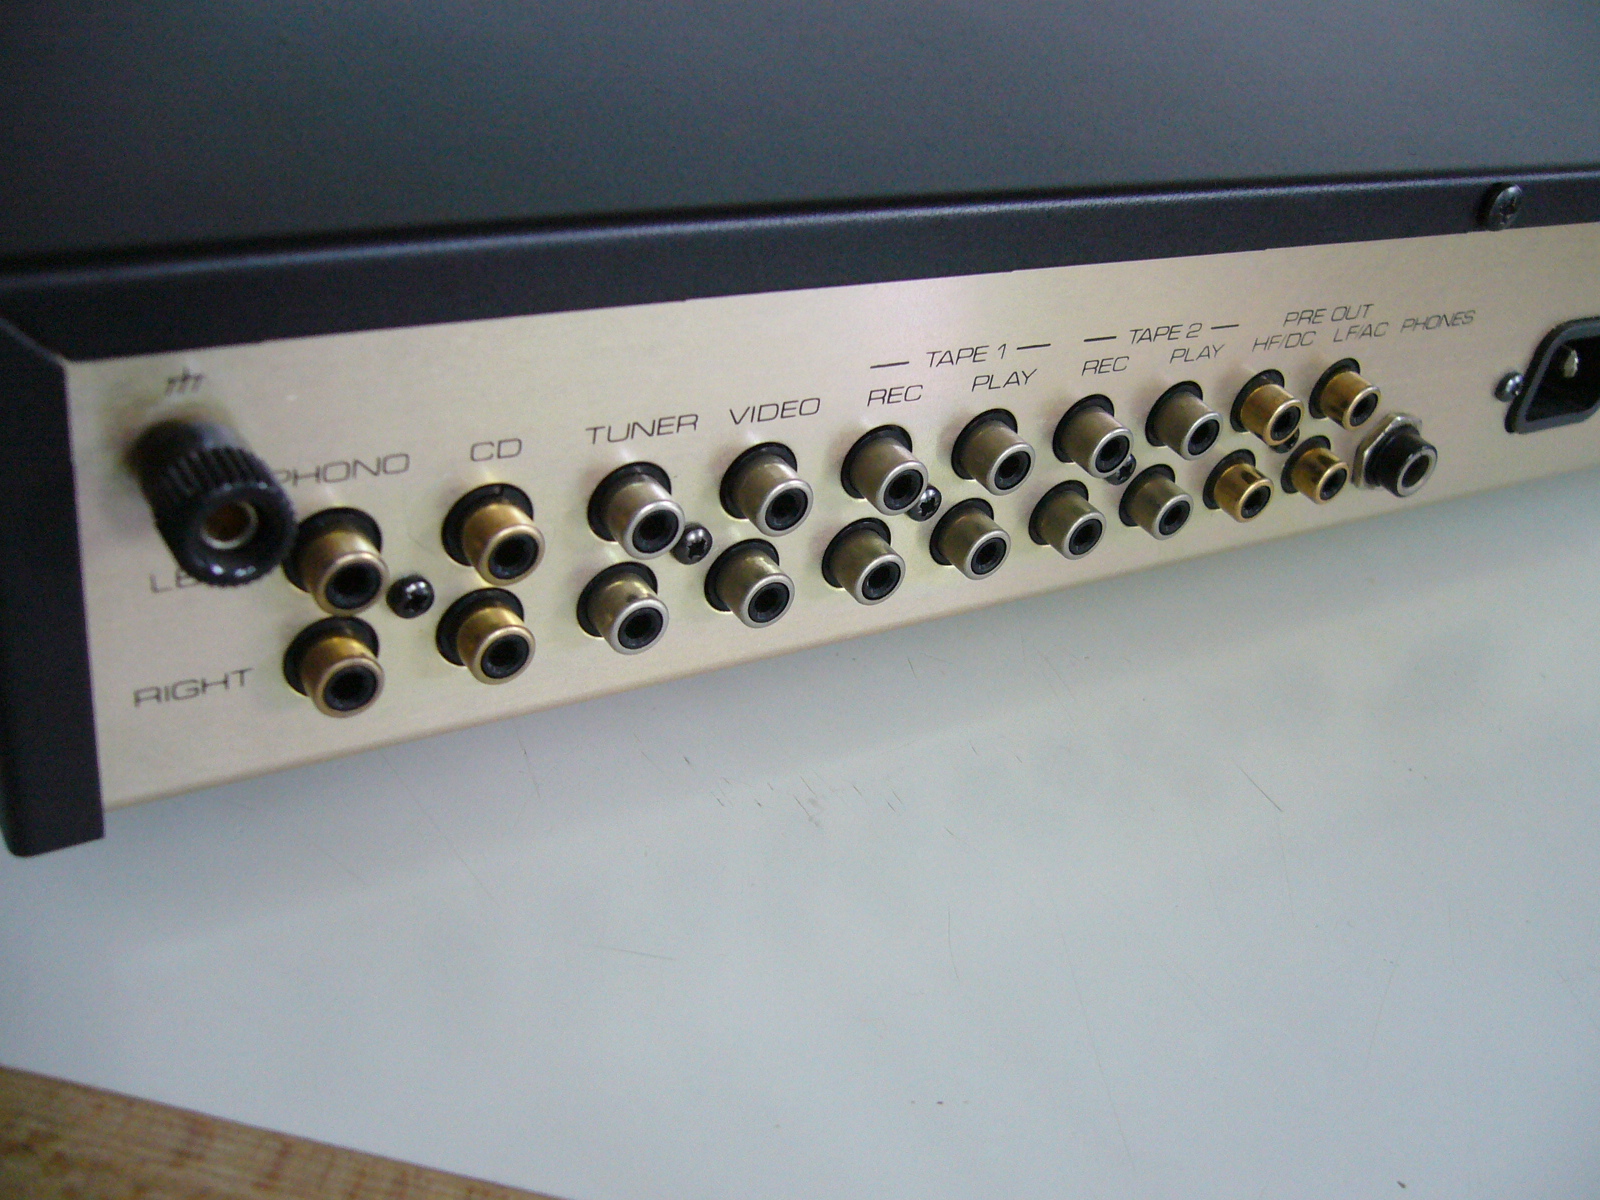 Présentation de la platine vinyle Technics SL-1500 C 